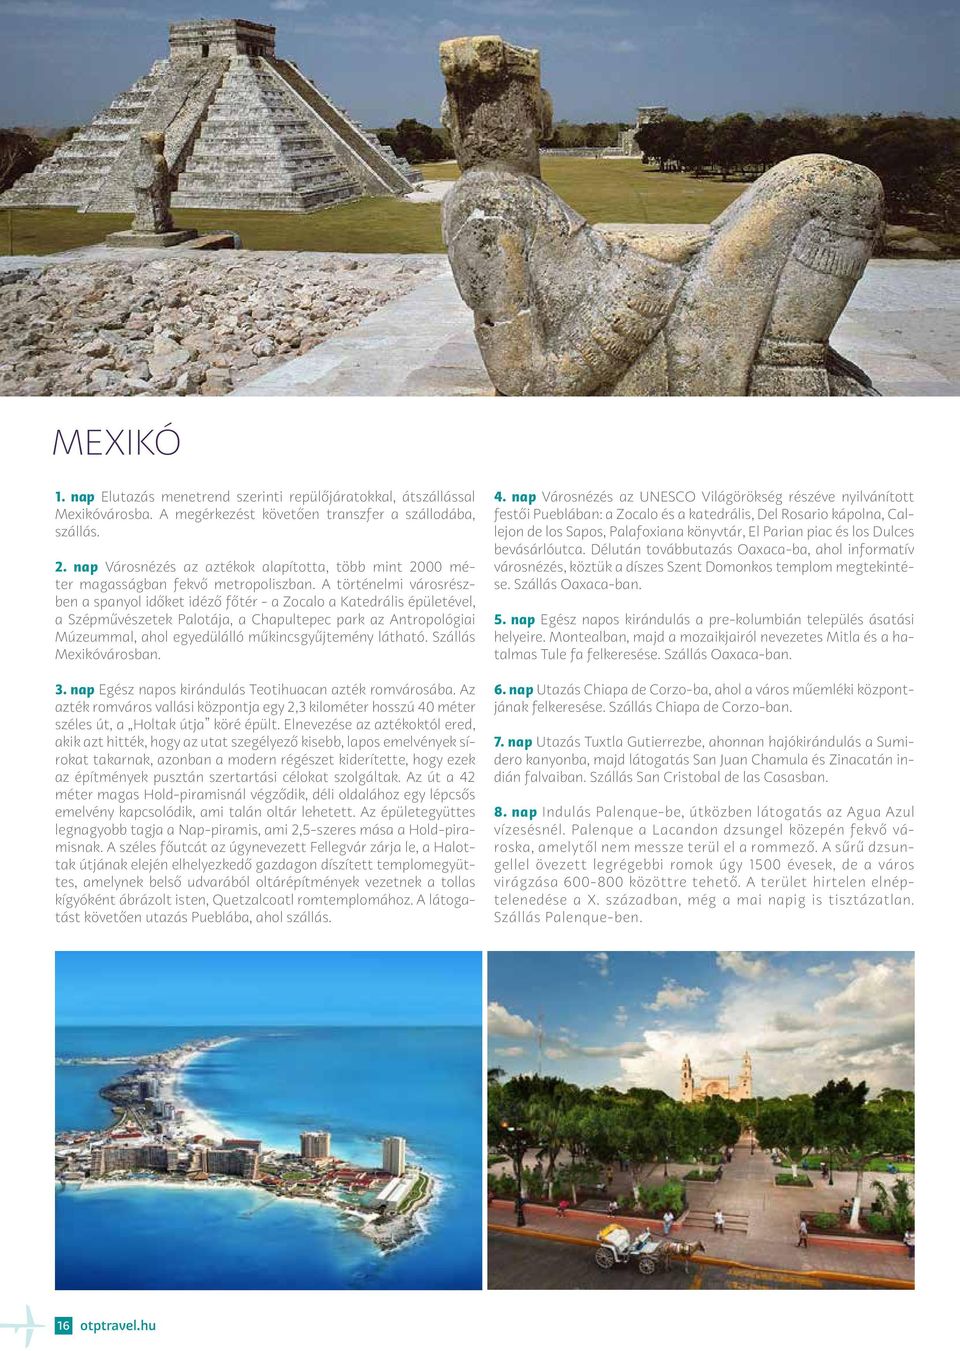 A történelmi városrészben a spanyol időket idéző főtér - a Zocalo a Katedrális épületével, a Szépművészetek Palotája, a Chapultepec park az Antropológiai Múzeummal, ahol egyedülálló műkincsgyűjtemény